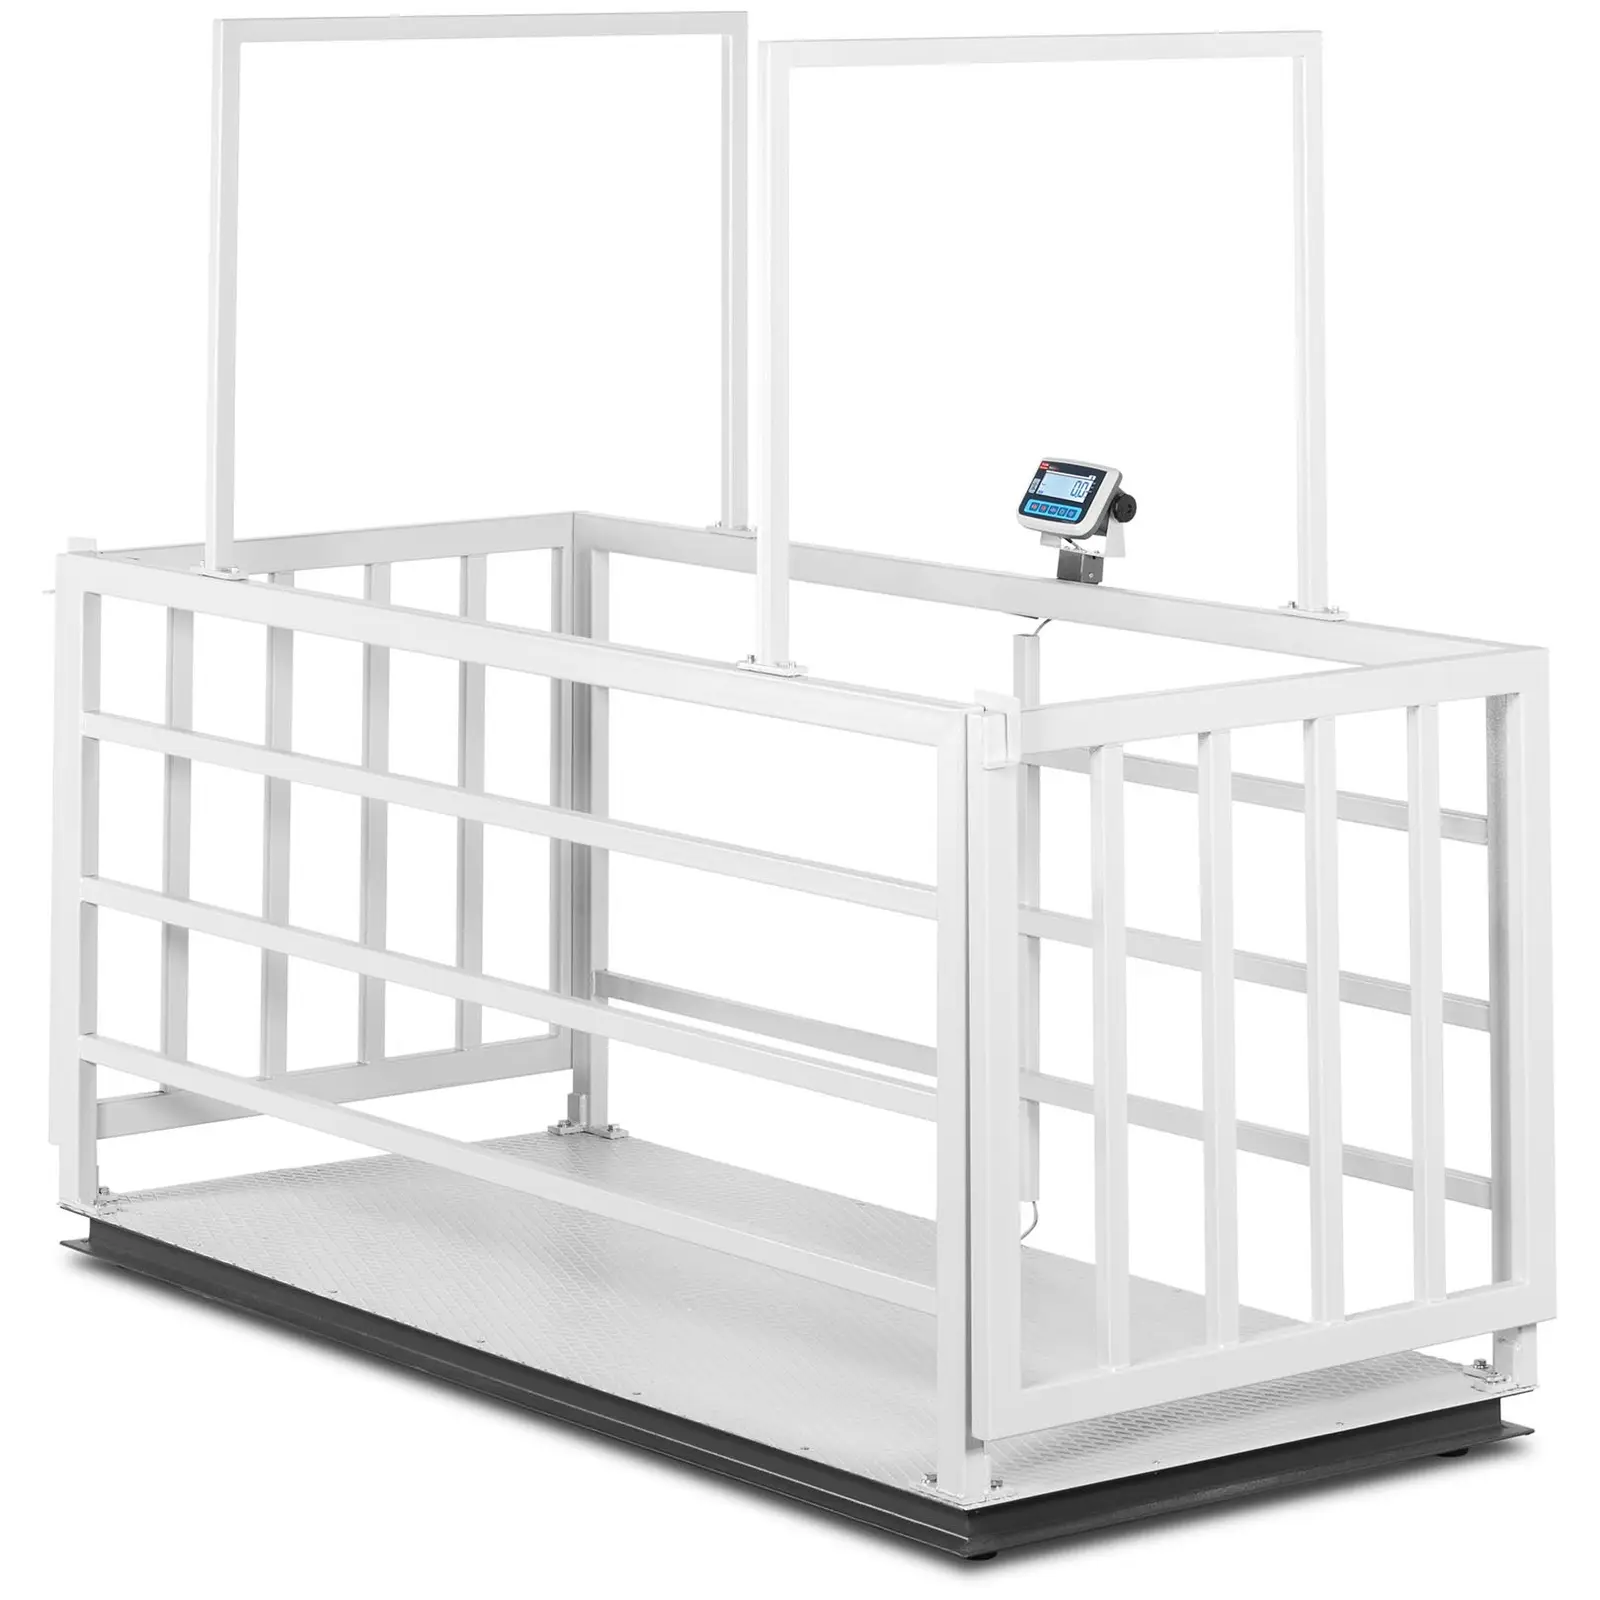 Balança para bovinos - calibrada - 1500 kg/500 g - gaiola para animais - LCD